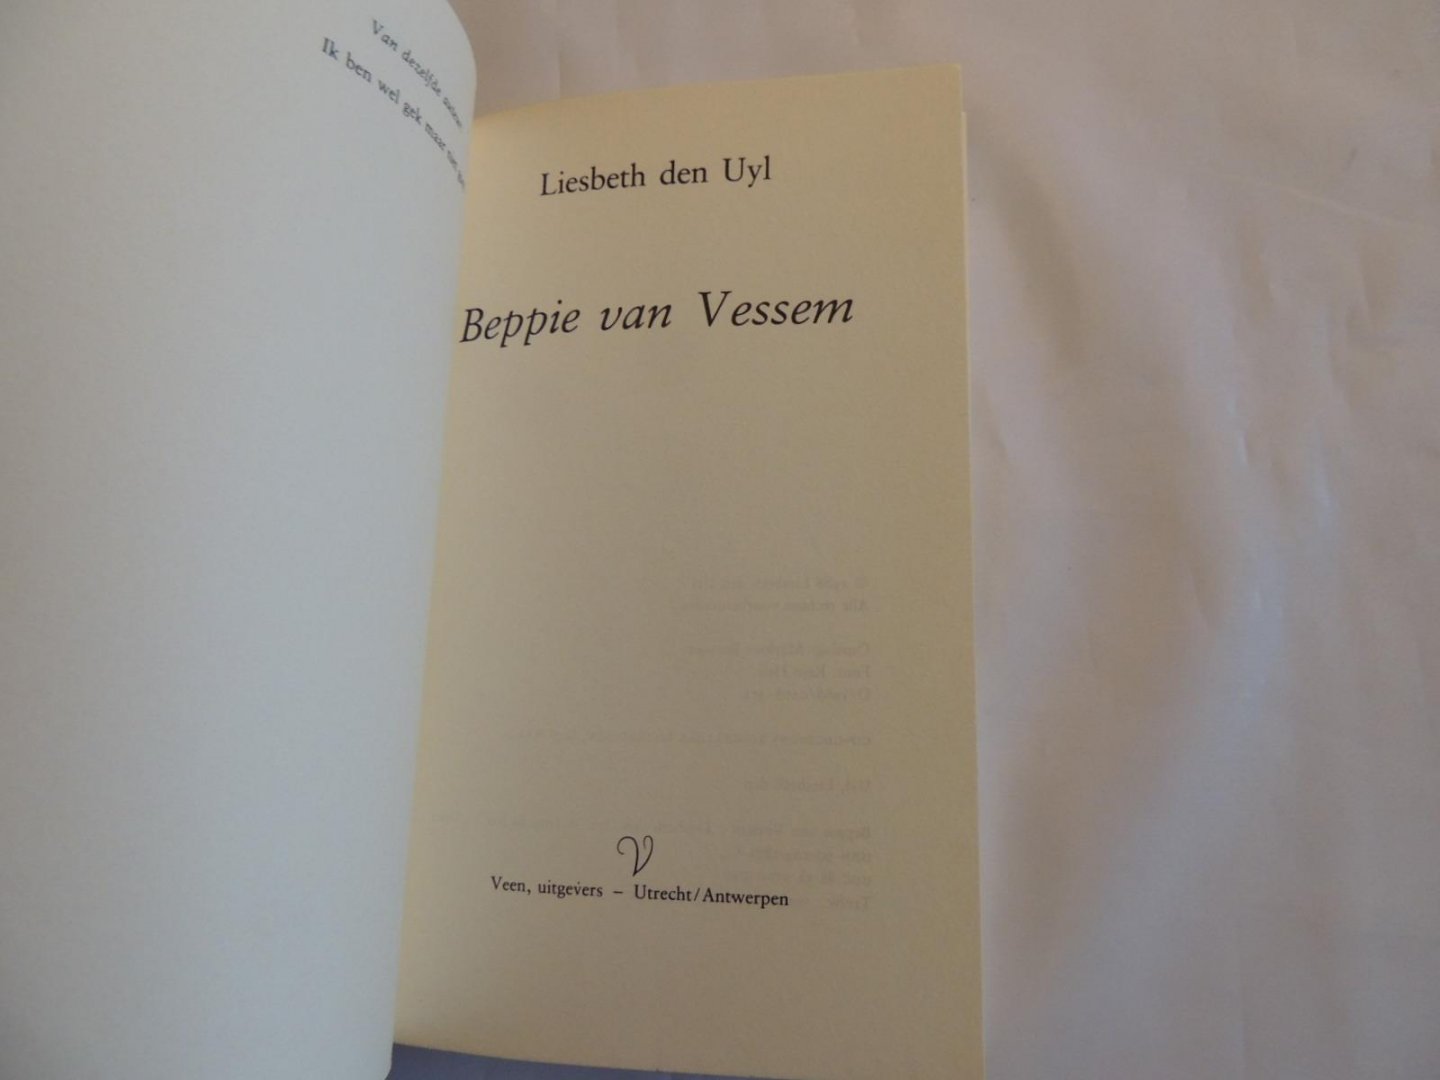 Uyl, Liesbeth den - Beppie van Vessem